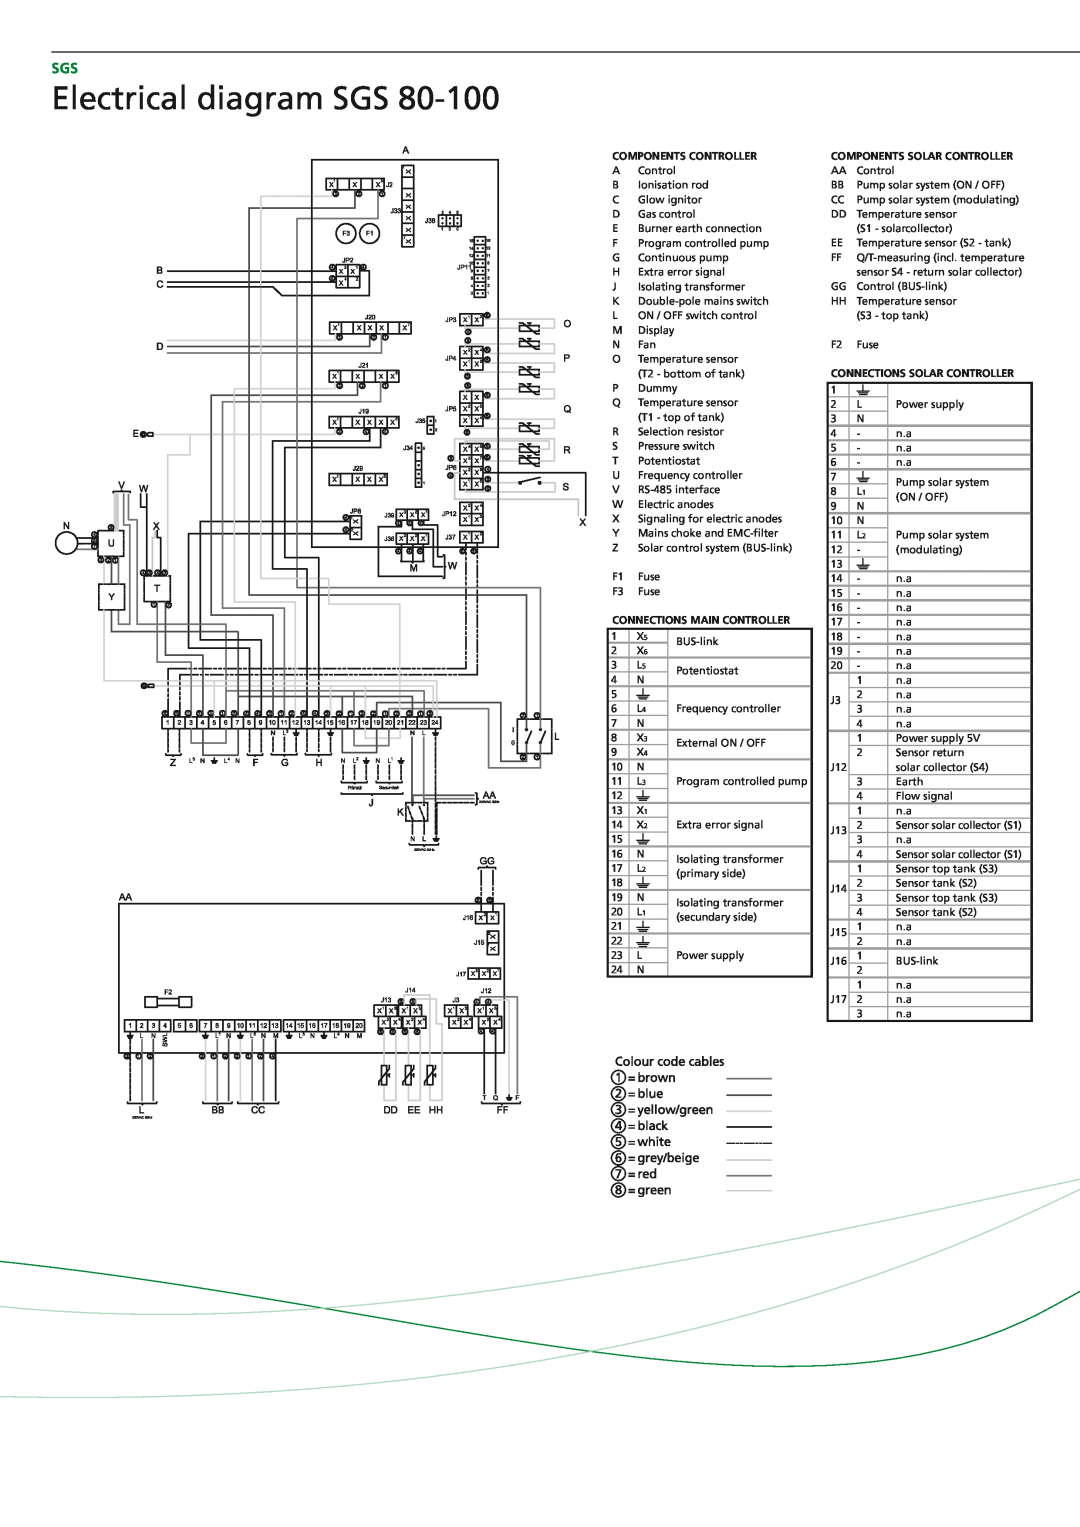 A.O. Smith SGS - 28, SGS - 60, SGS - 50, SGS - 30 Electrical diagram SGS, Components controller, Connections main controller 